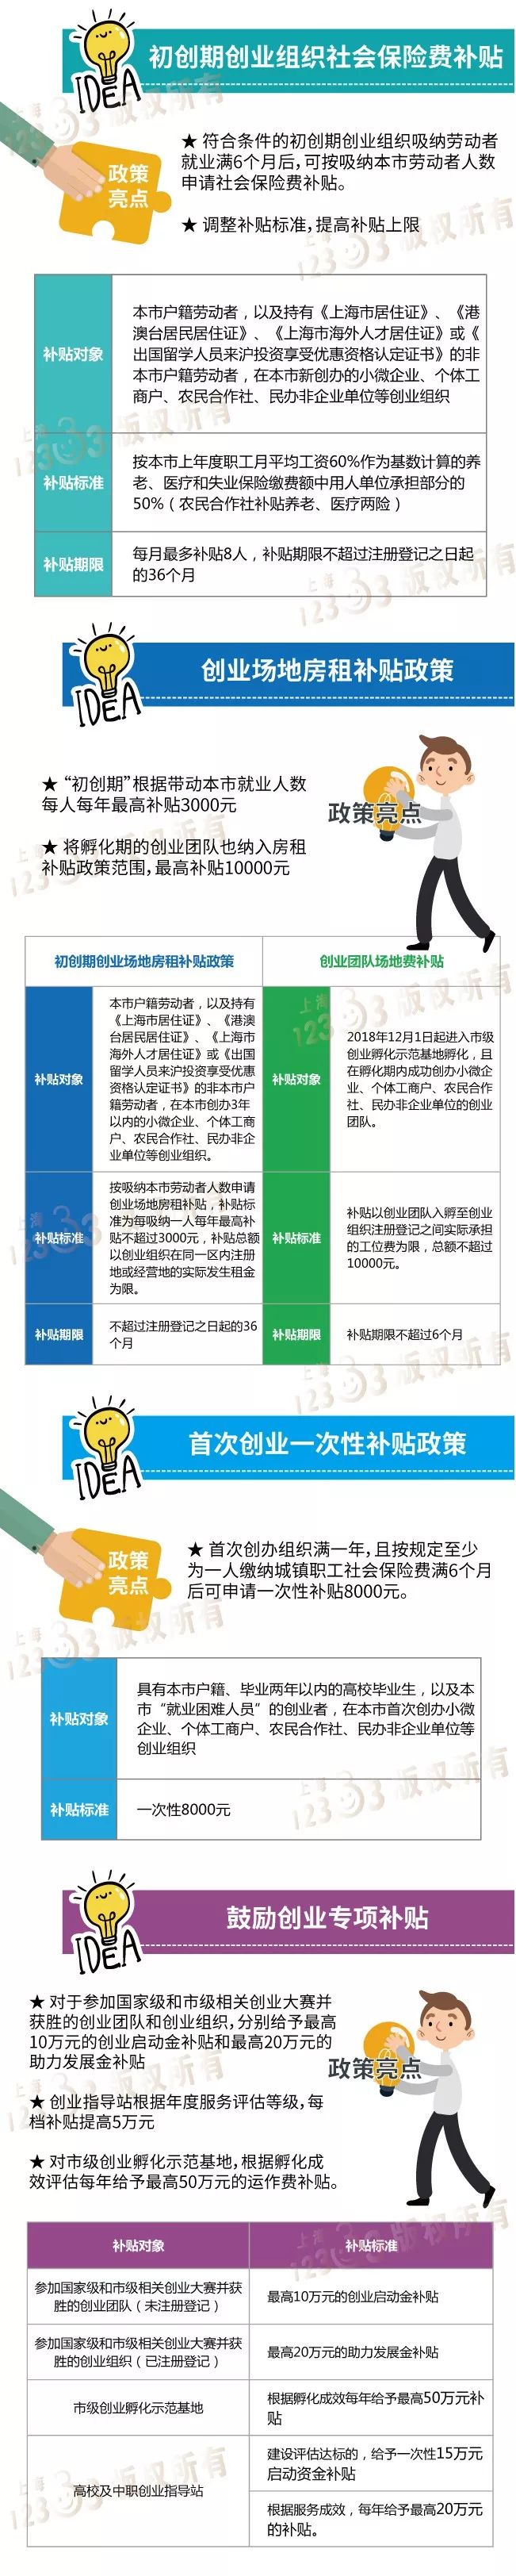 2018上海创业补贴政策